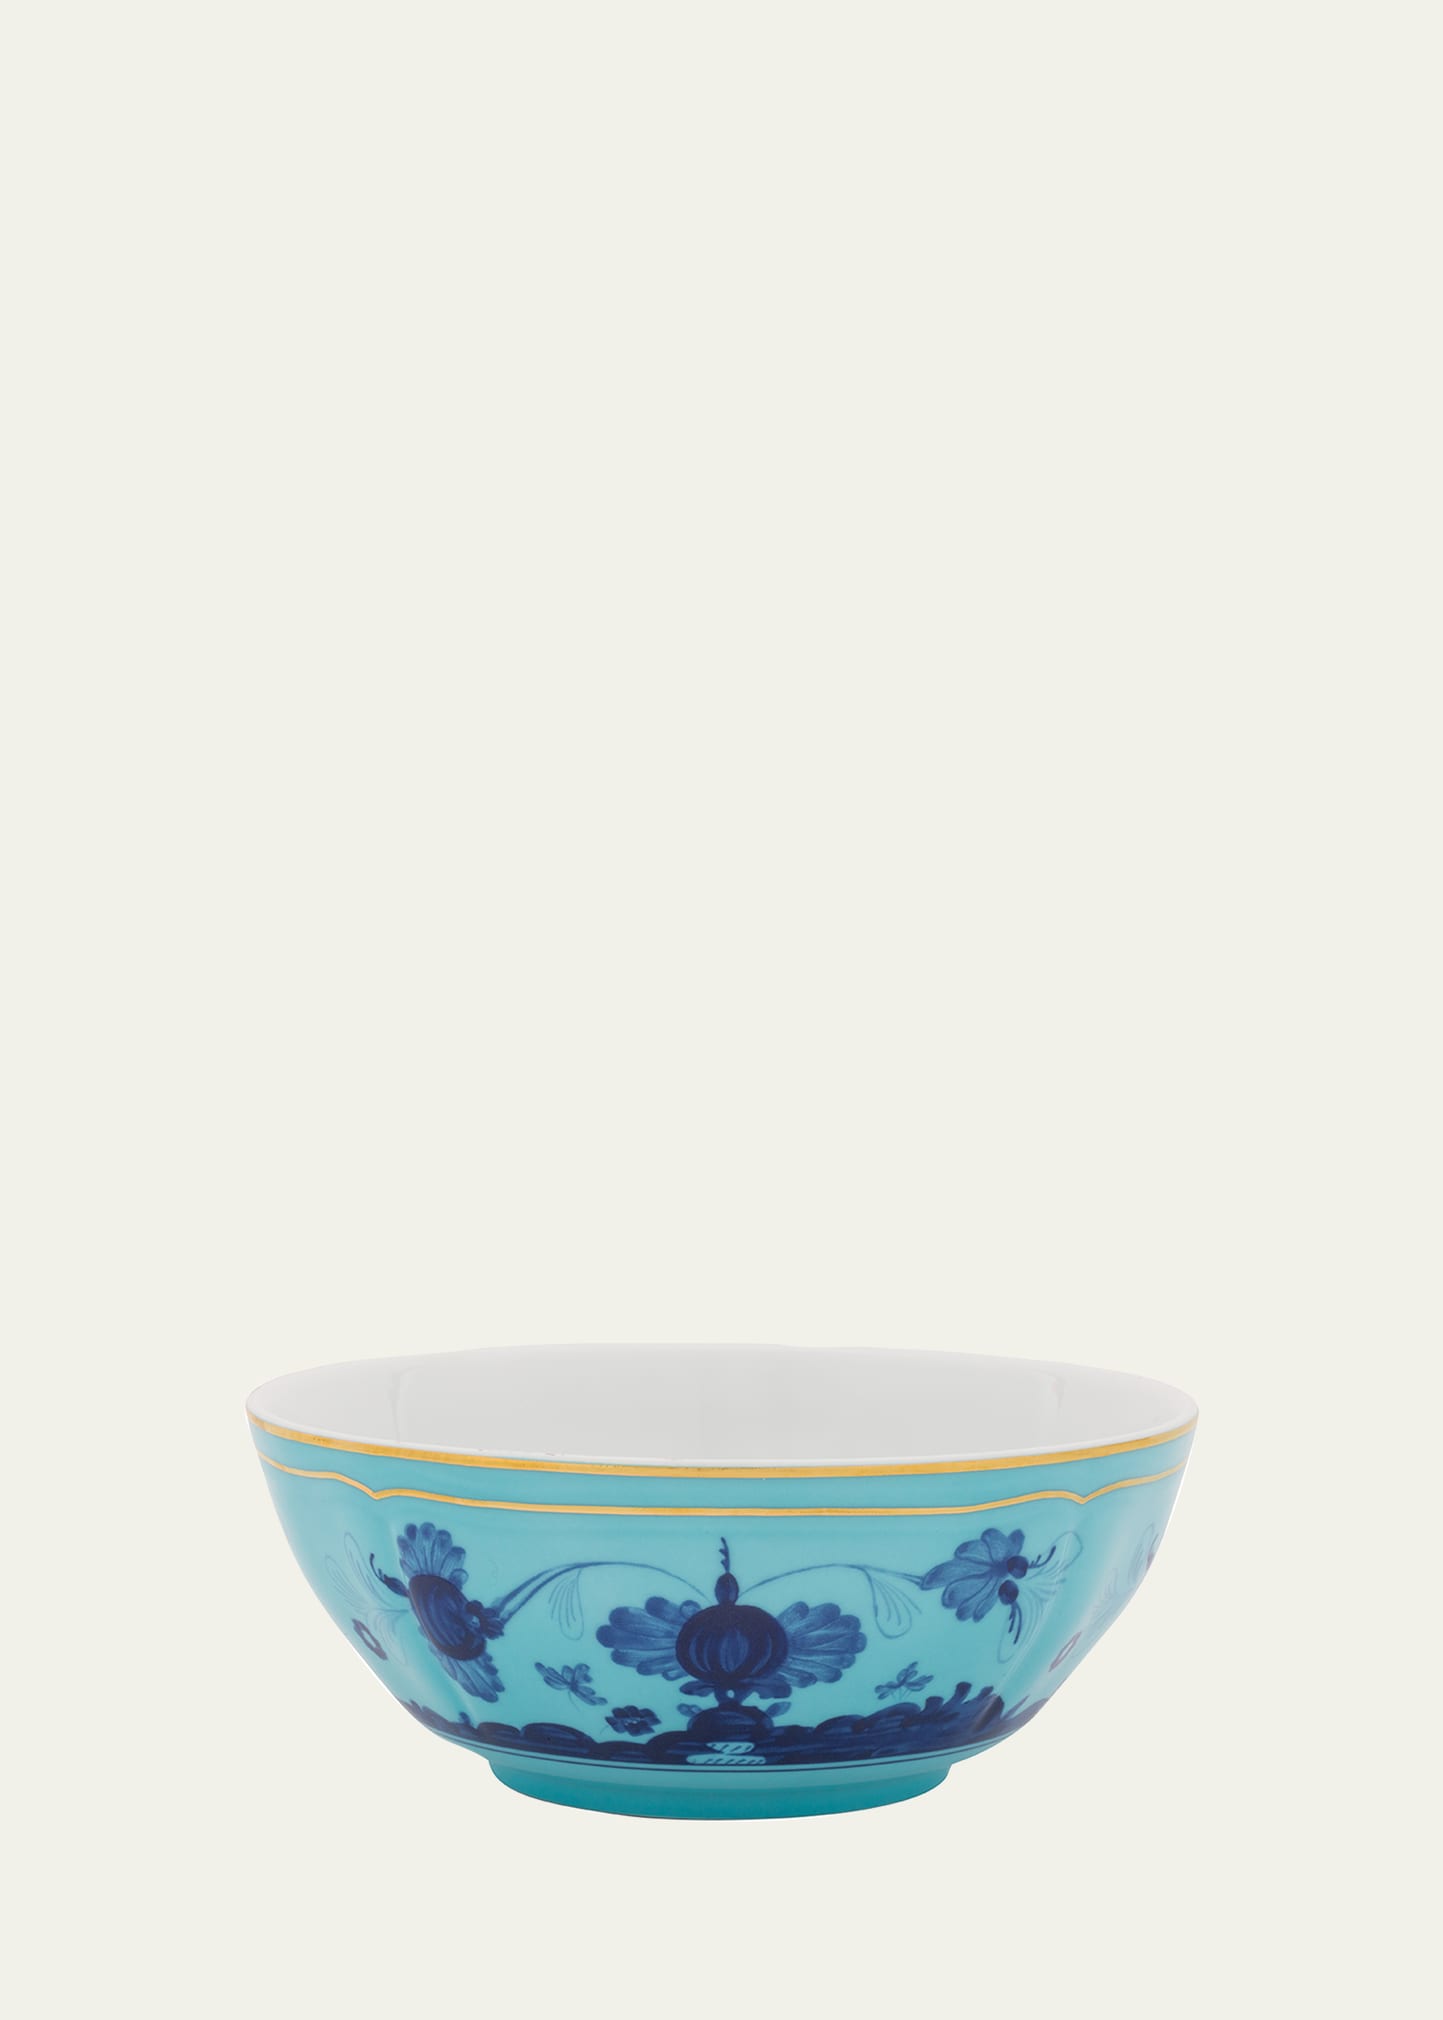 GINORI 1735 Oriente Italiano Cereal Bowl, Iris